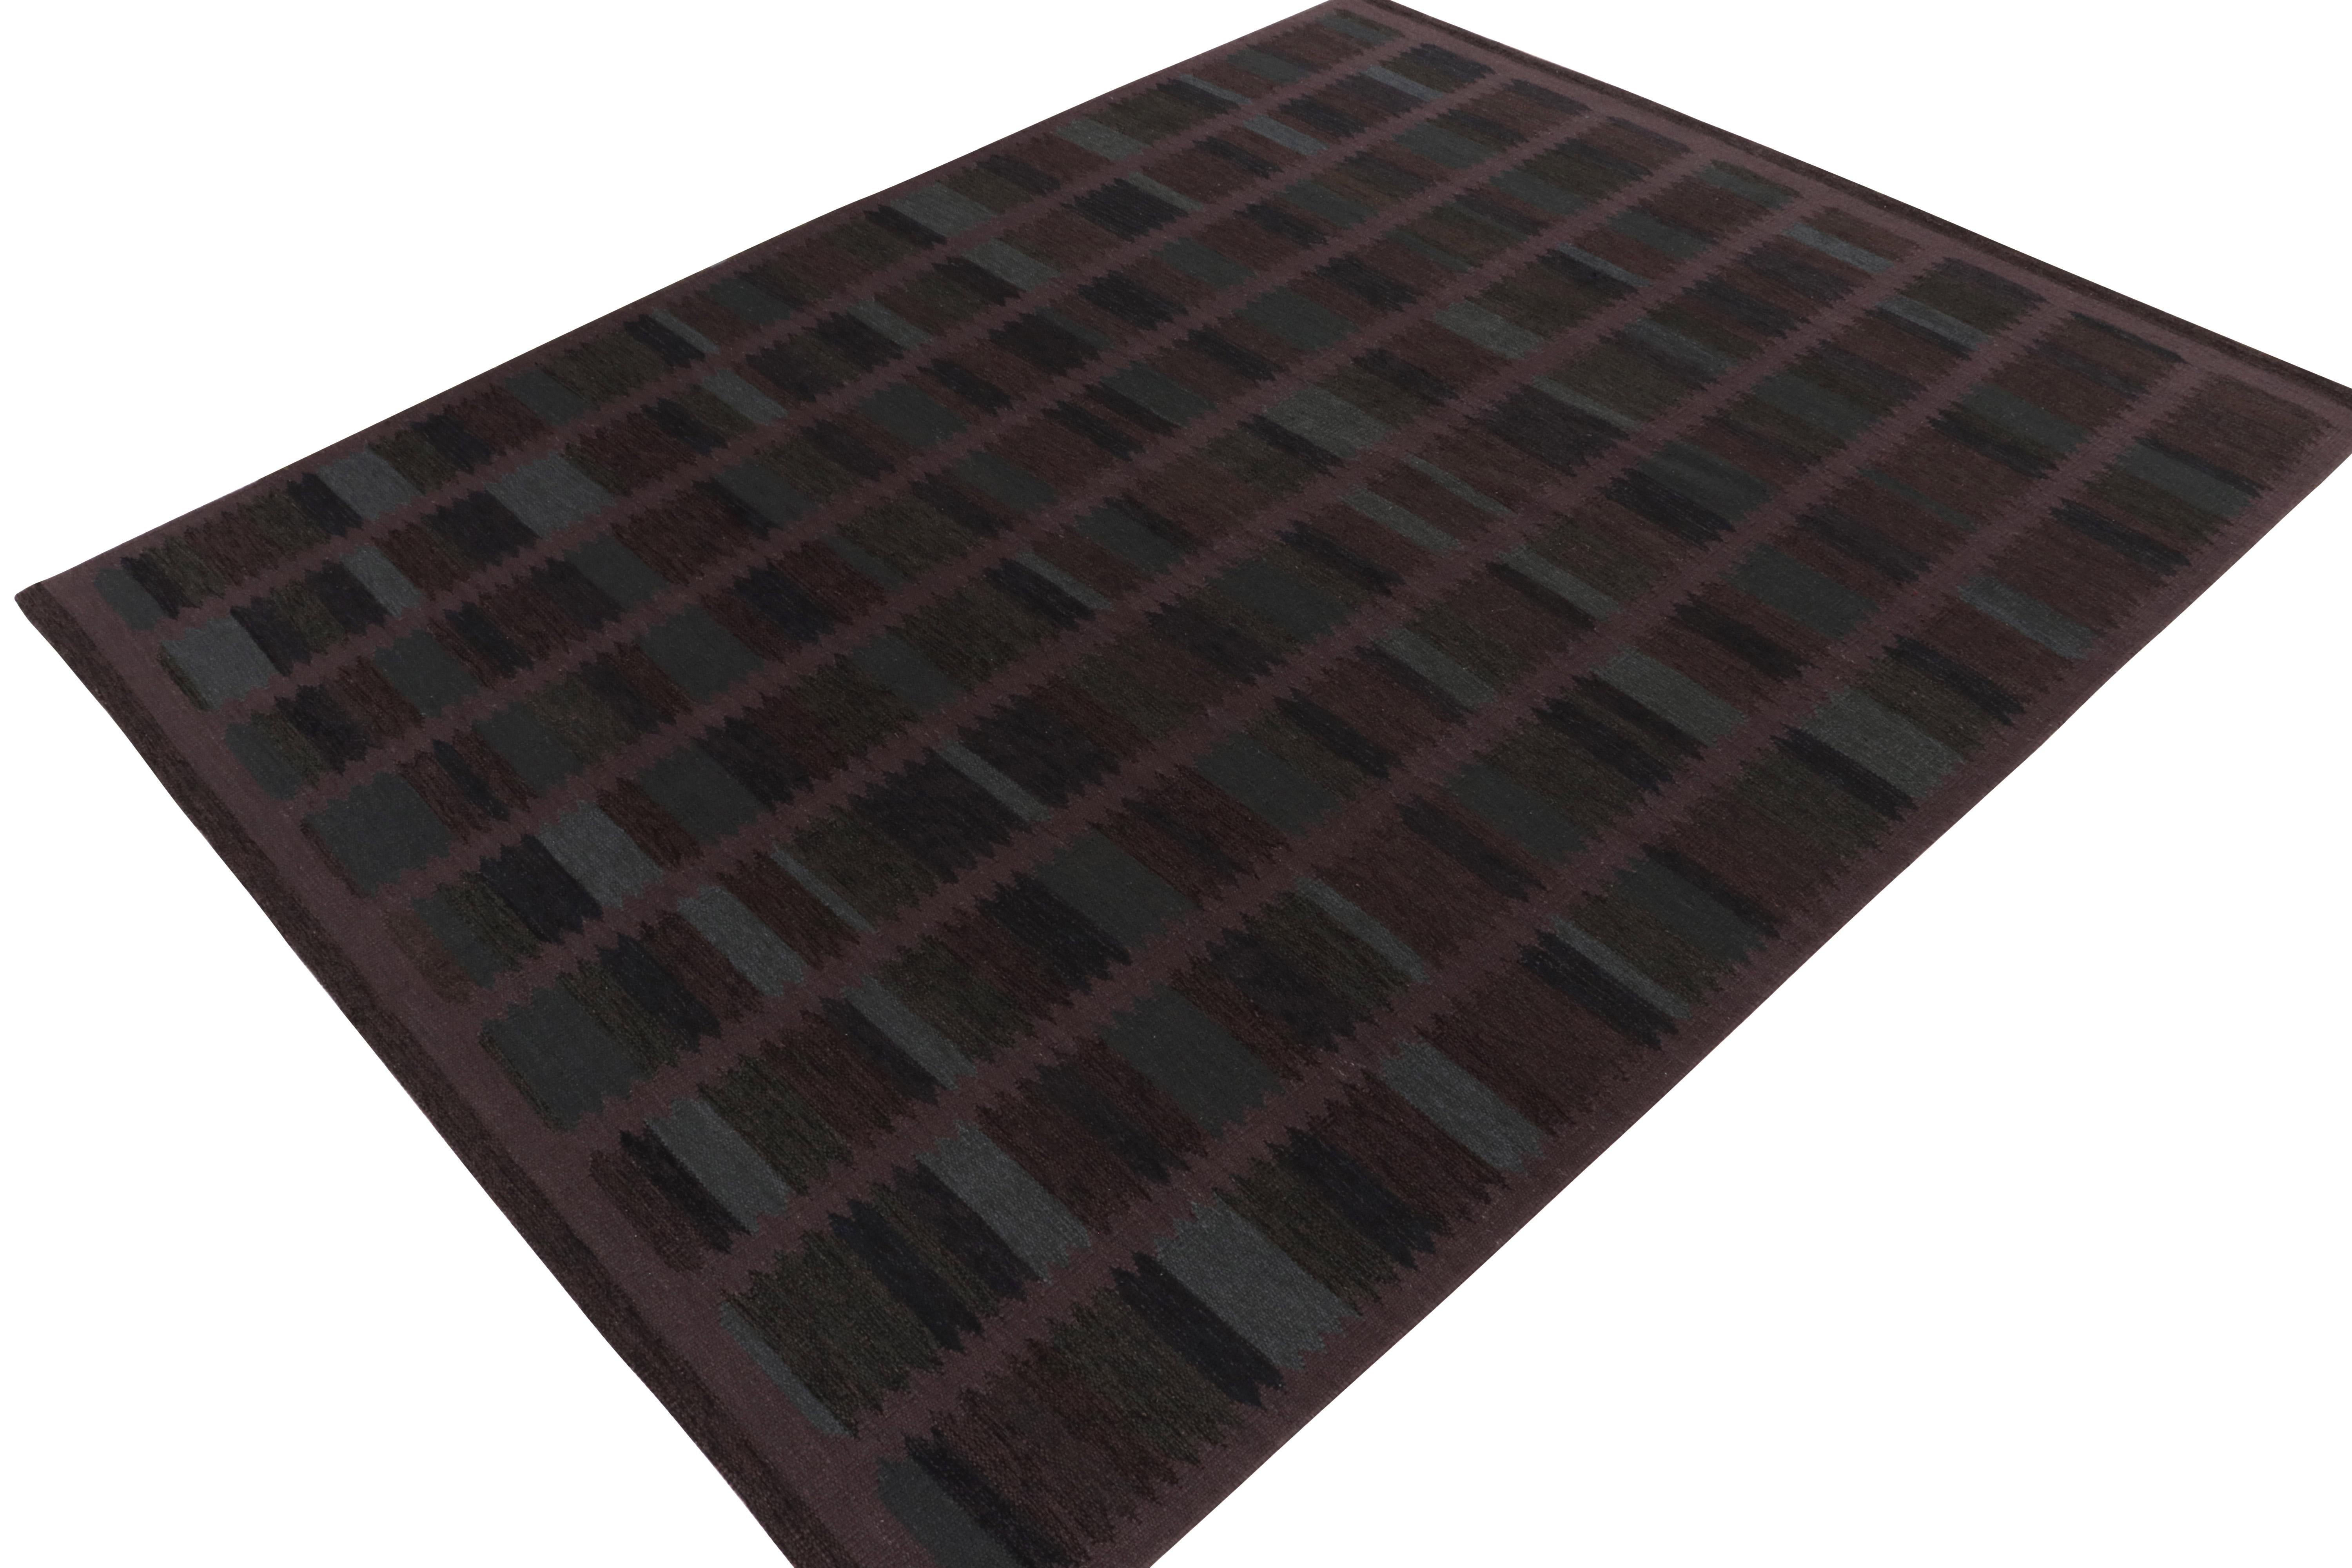 Ein 10x14 Flachgewebe aus der preisgekrönten skandinavischen Kilim-Kollektion von Rug & Kilim. 

Über das Design: Dieser besondere Teppich hat einen reifen Ton mit einem geometrischen Muster in Violett, Braun und Blau, das durch unsere ungefärbten